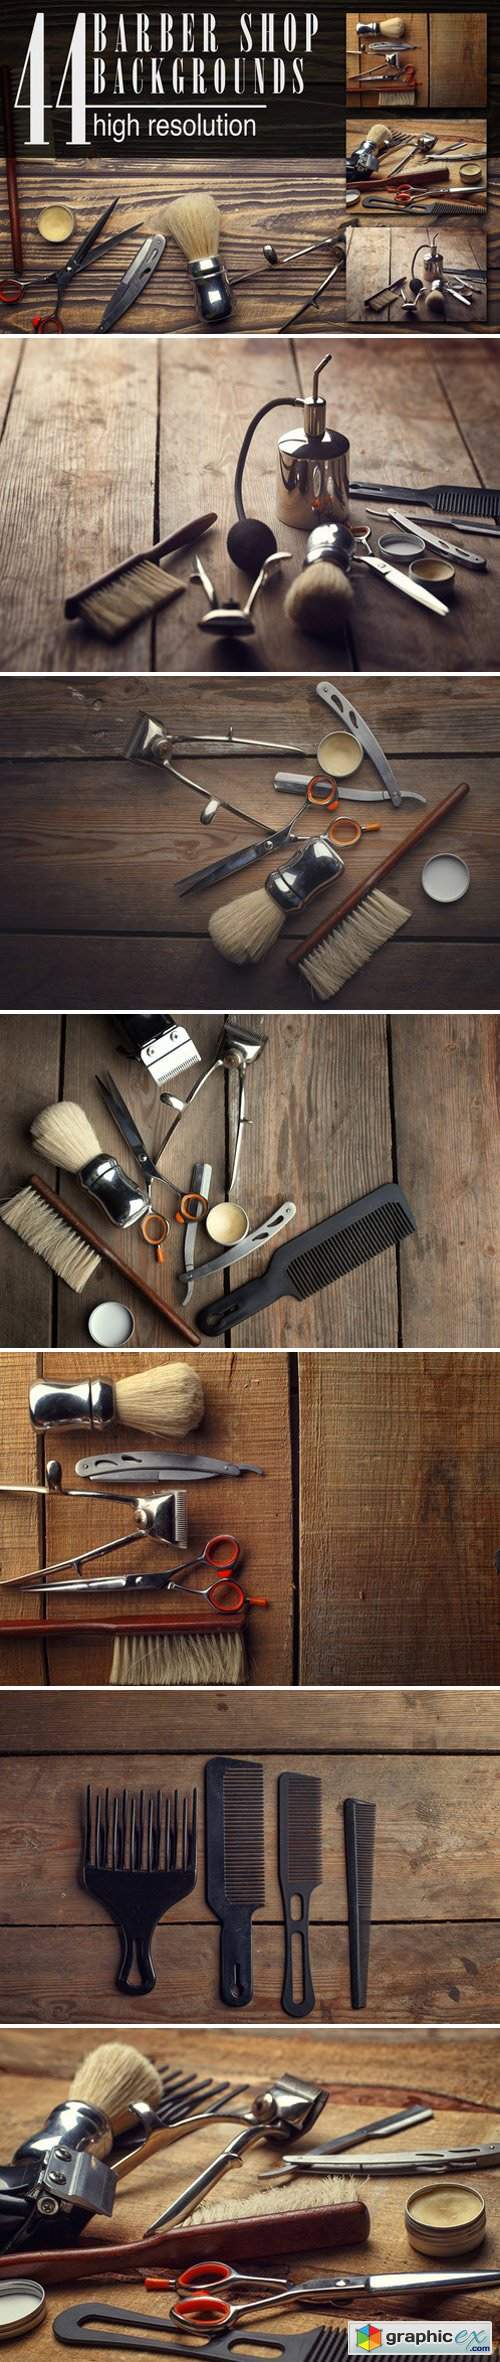 44 barber shop wooden backgrounds